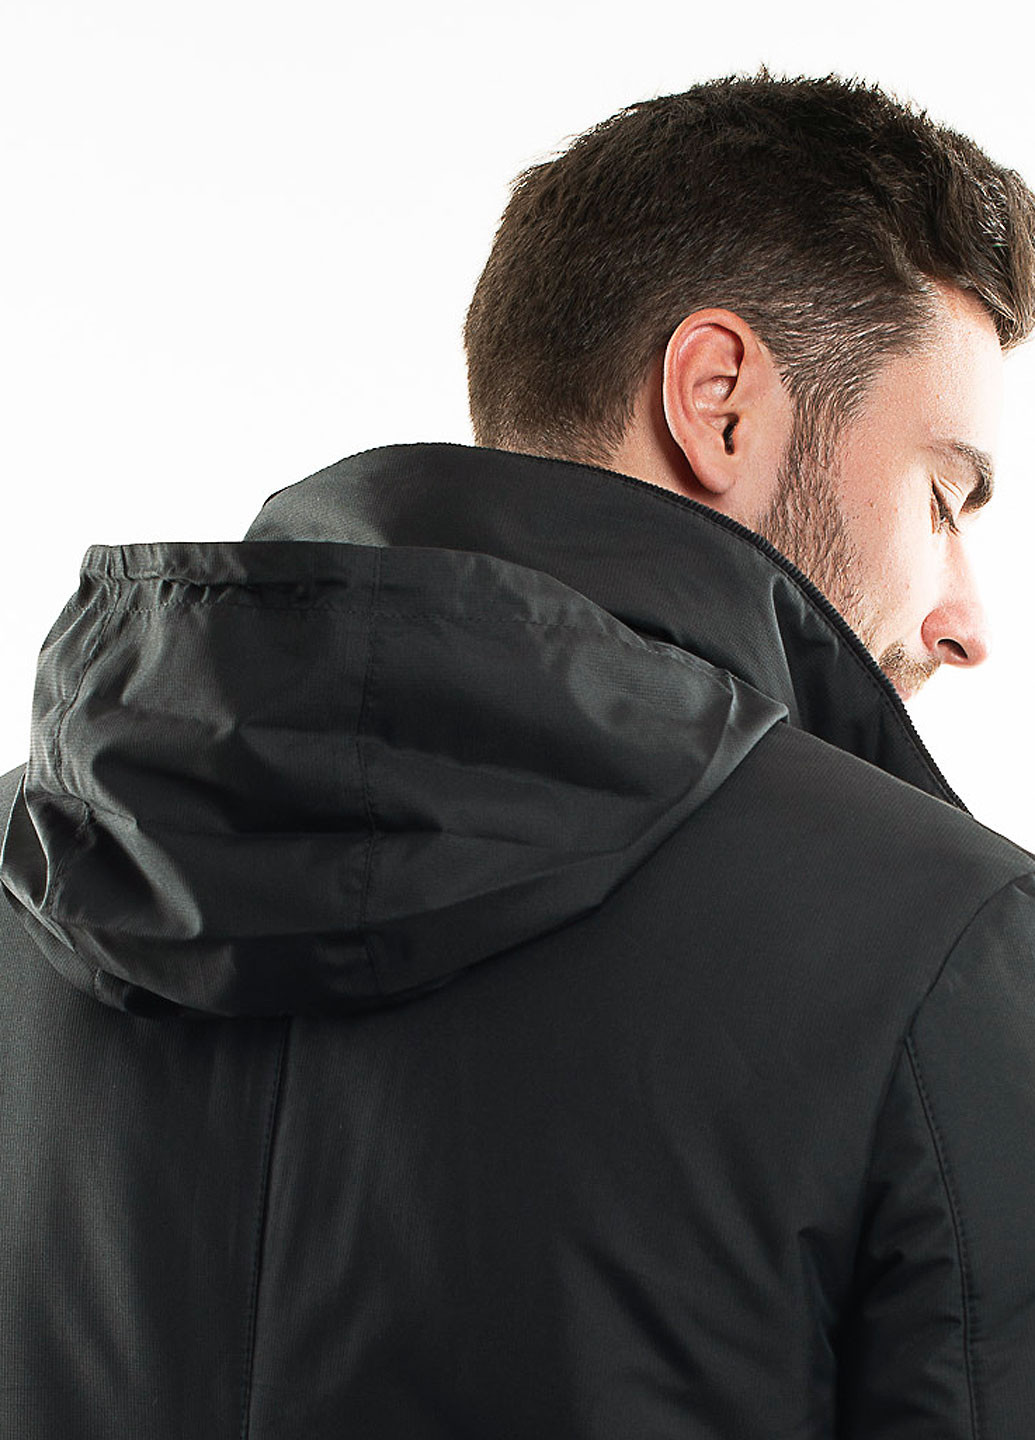 Черная демисезонная куртка демисезонная на мембране Astoni Actavis